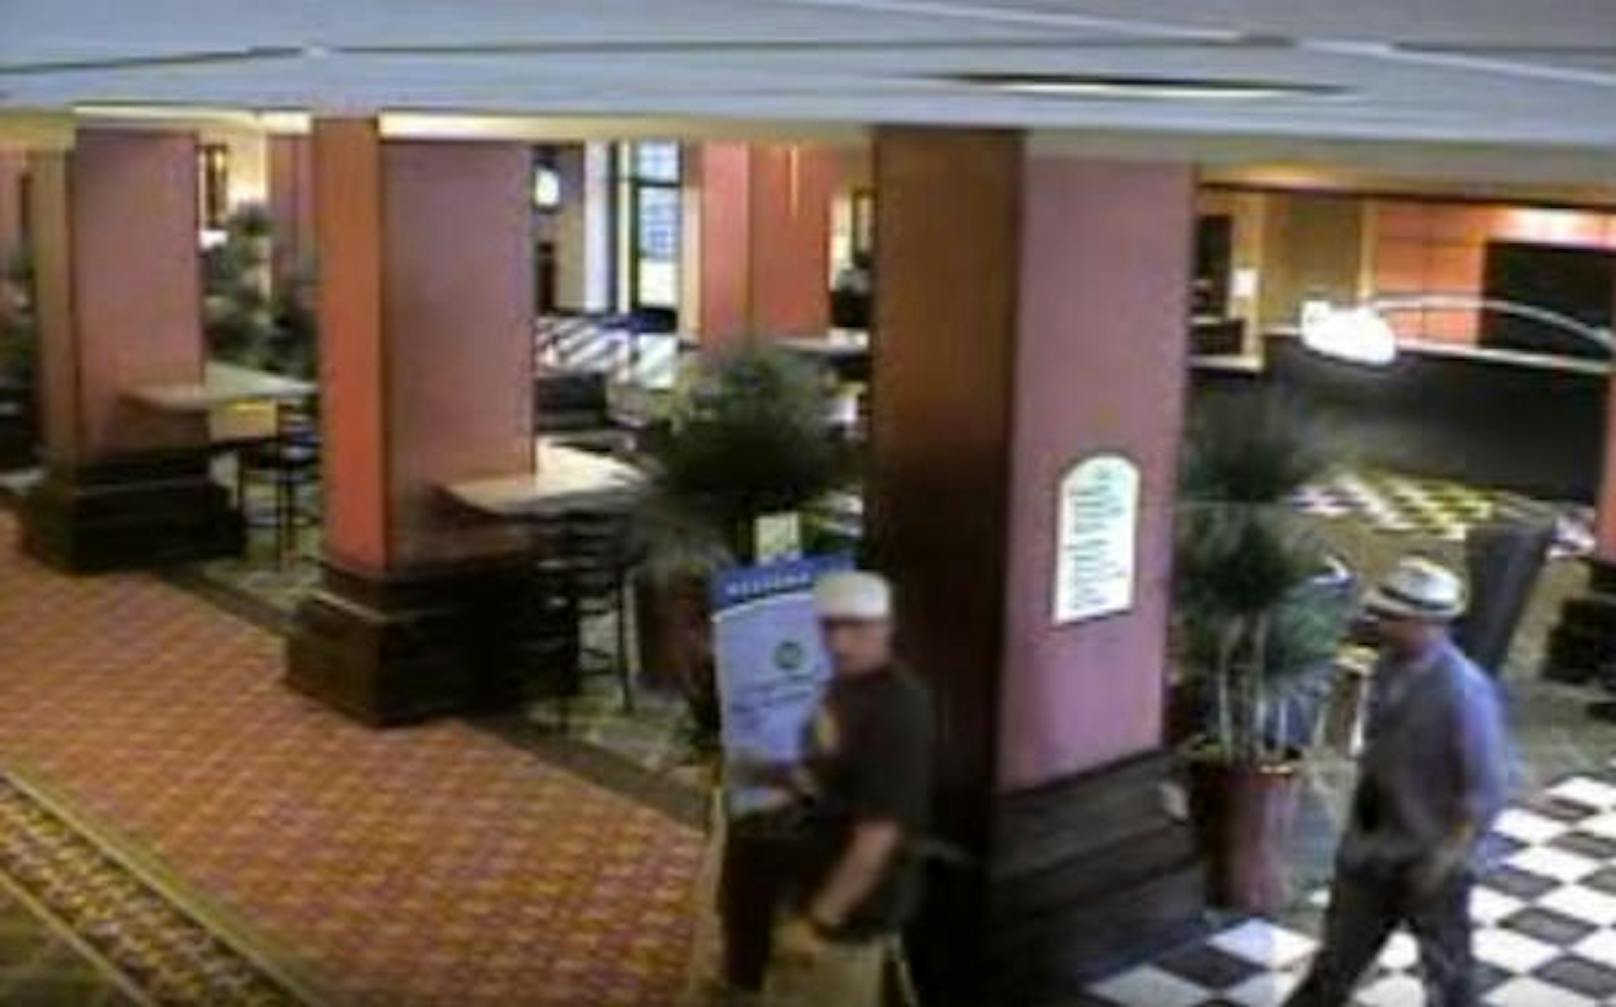 Aufnahmen einer Überwachungskamera zeigen den Kriminellen, der in den USA in Hunderten von Hotels in Zimmer eingedrungen ist, in Aktion. Hier ist er zusammen mit einem Komplizen zu sehen, als sie die Hotel-Lobby betreten.